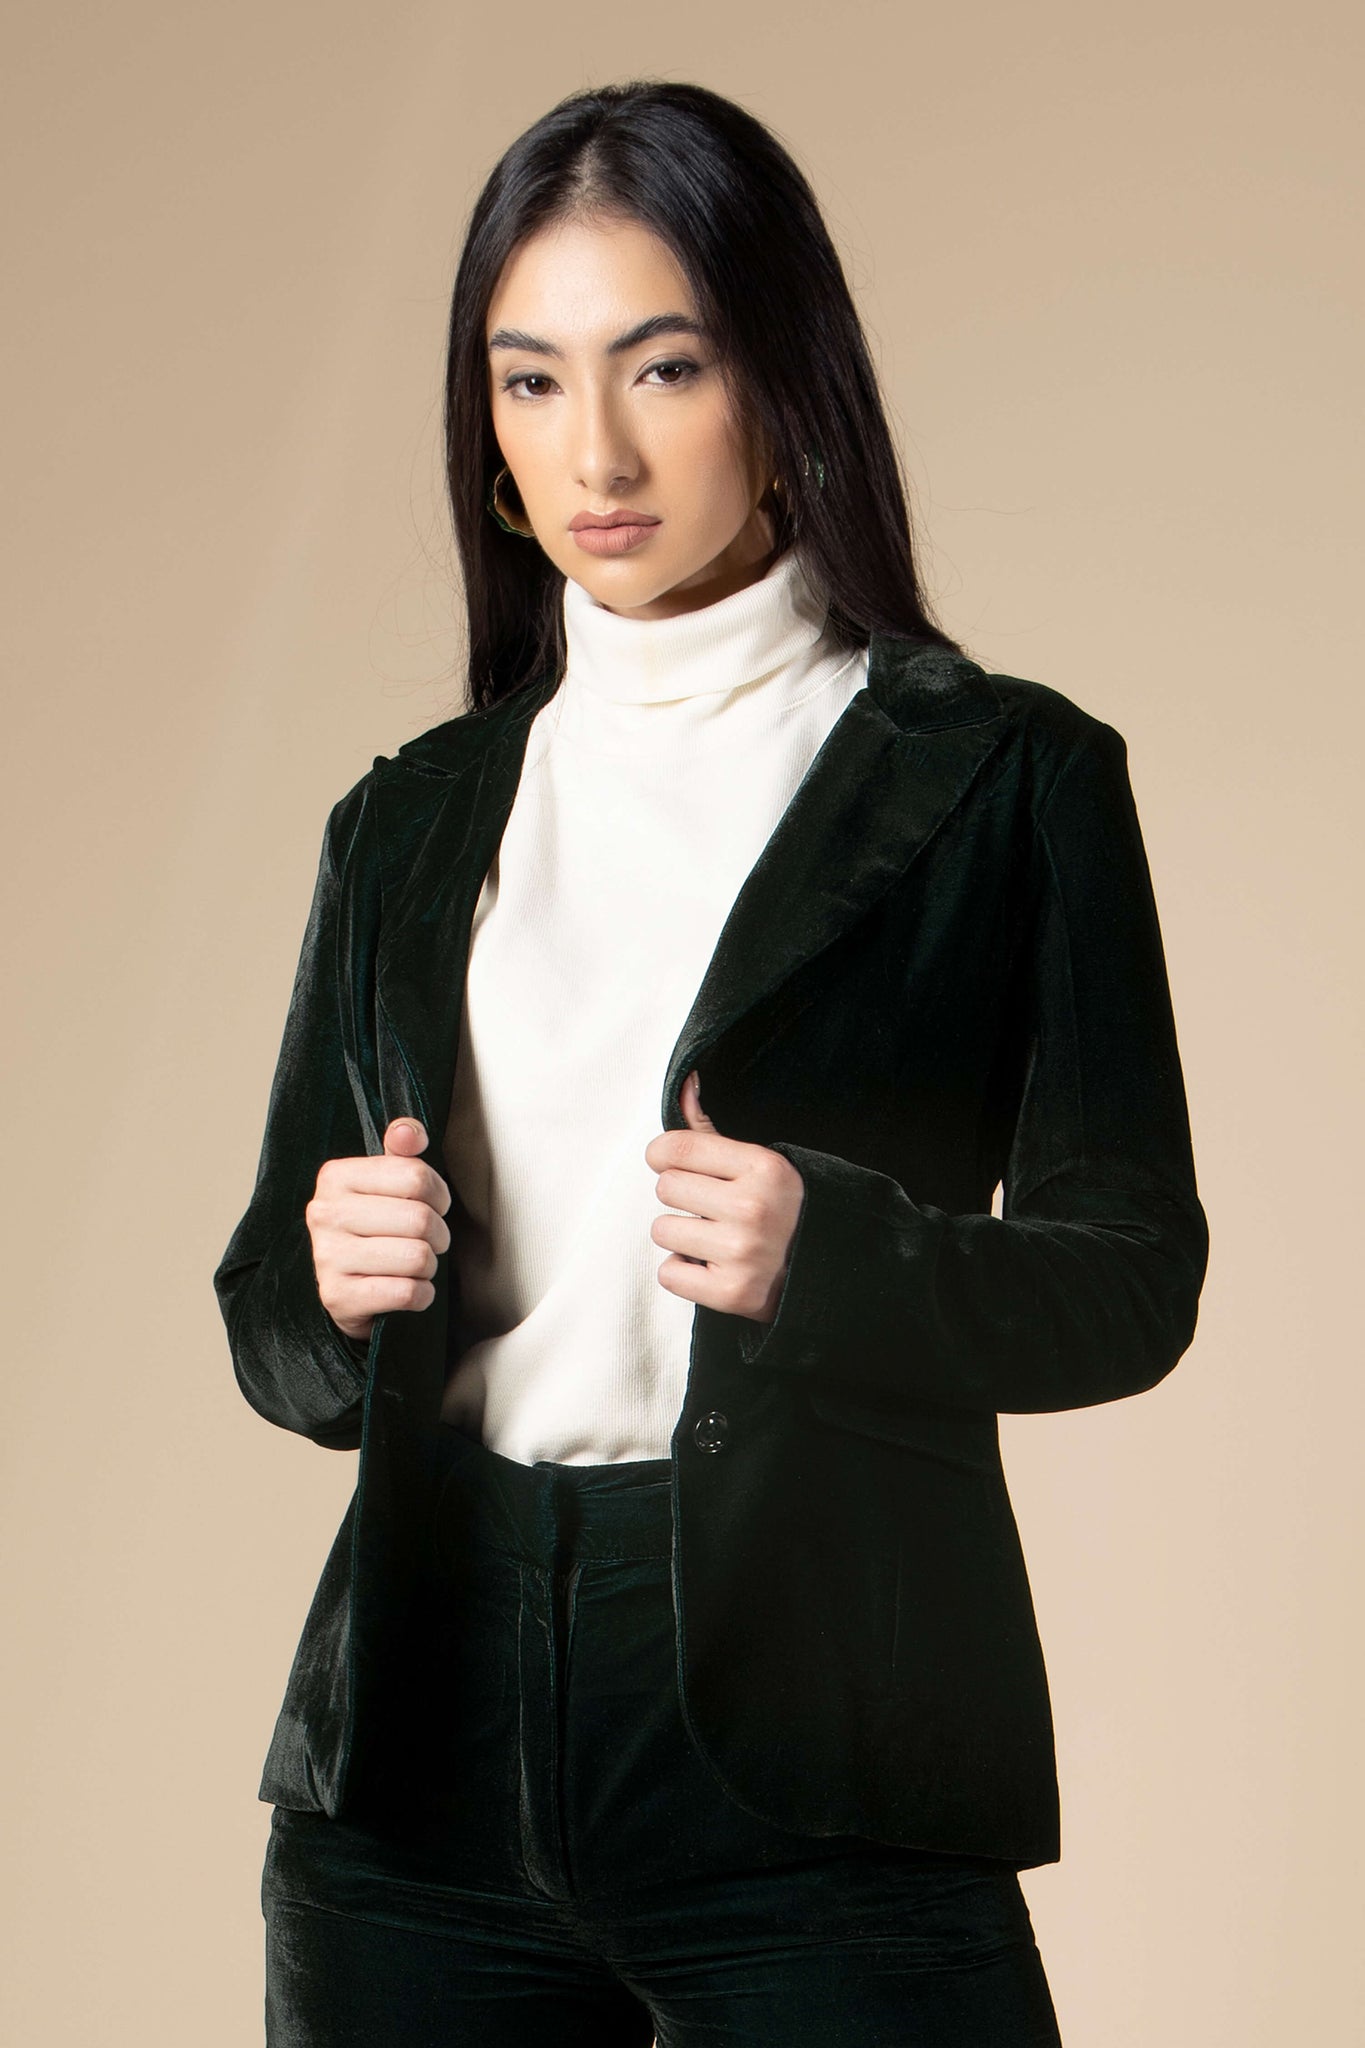 Green Dual Tone Luxurious Velvet Blazer For Women